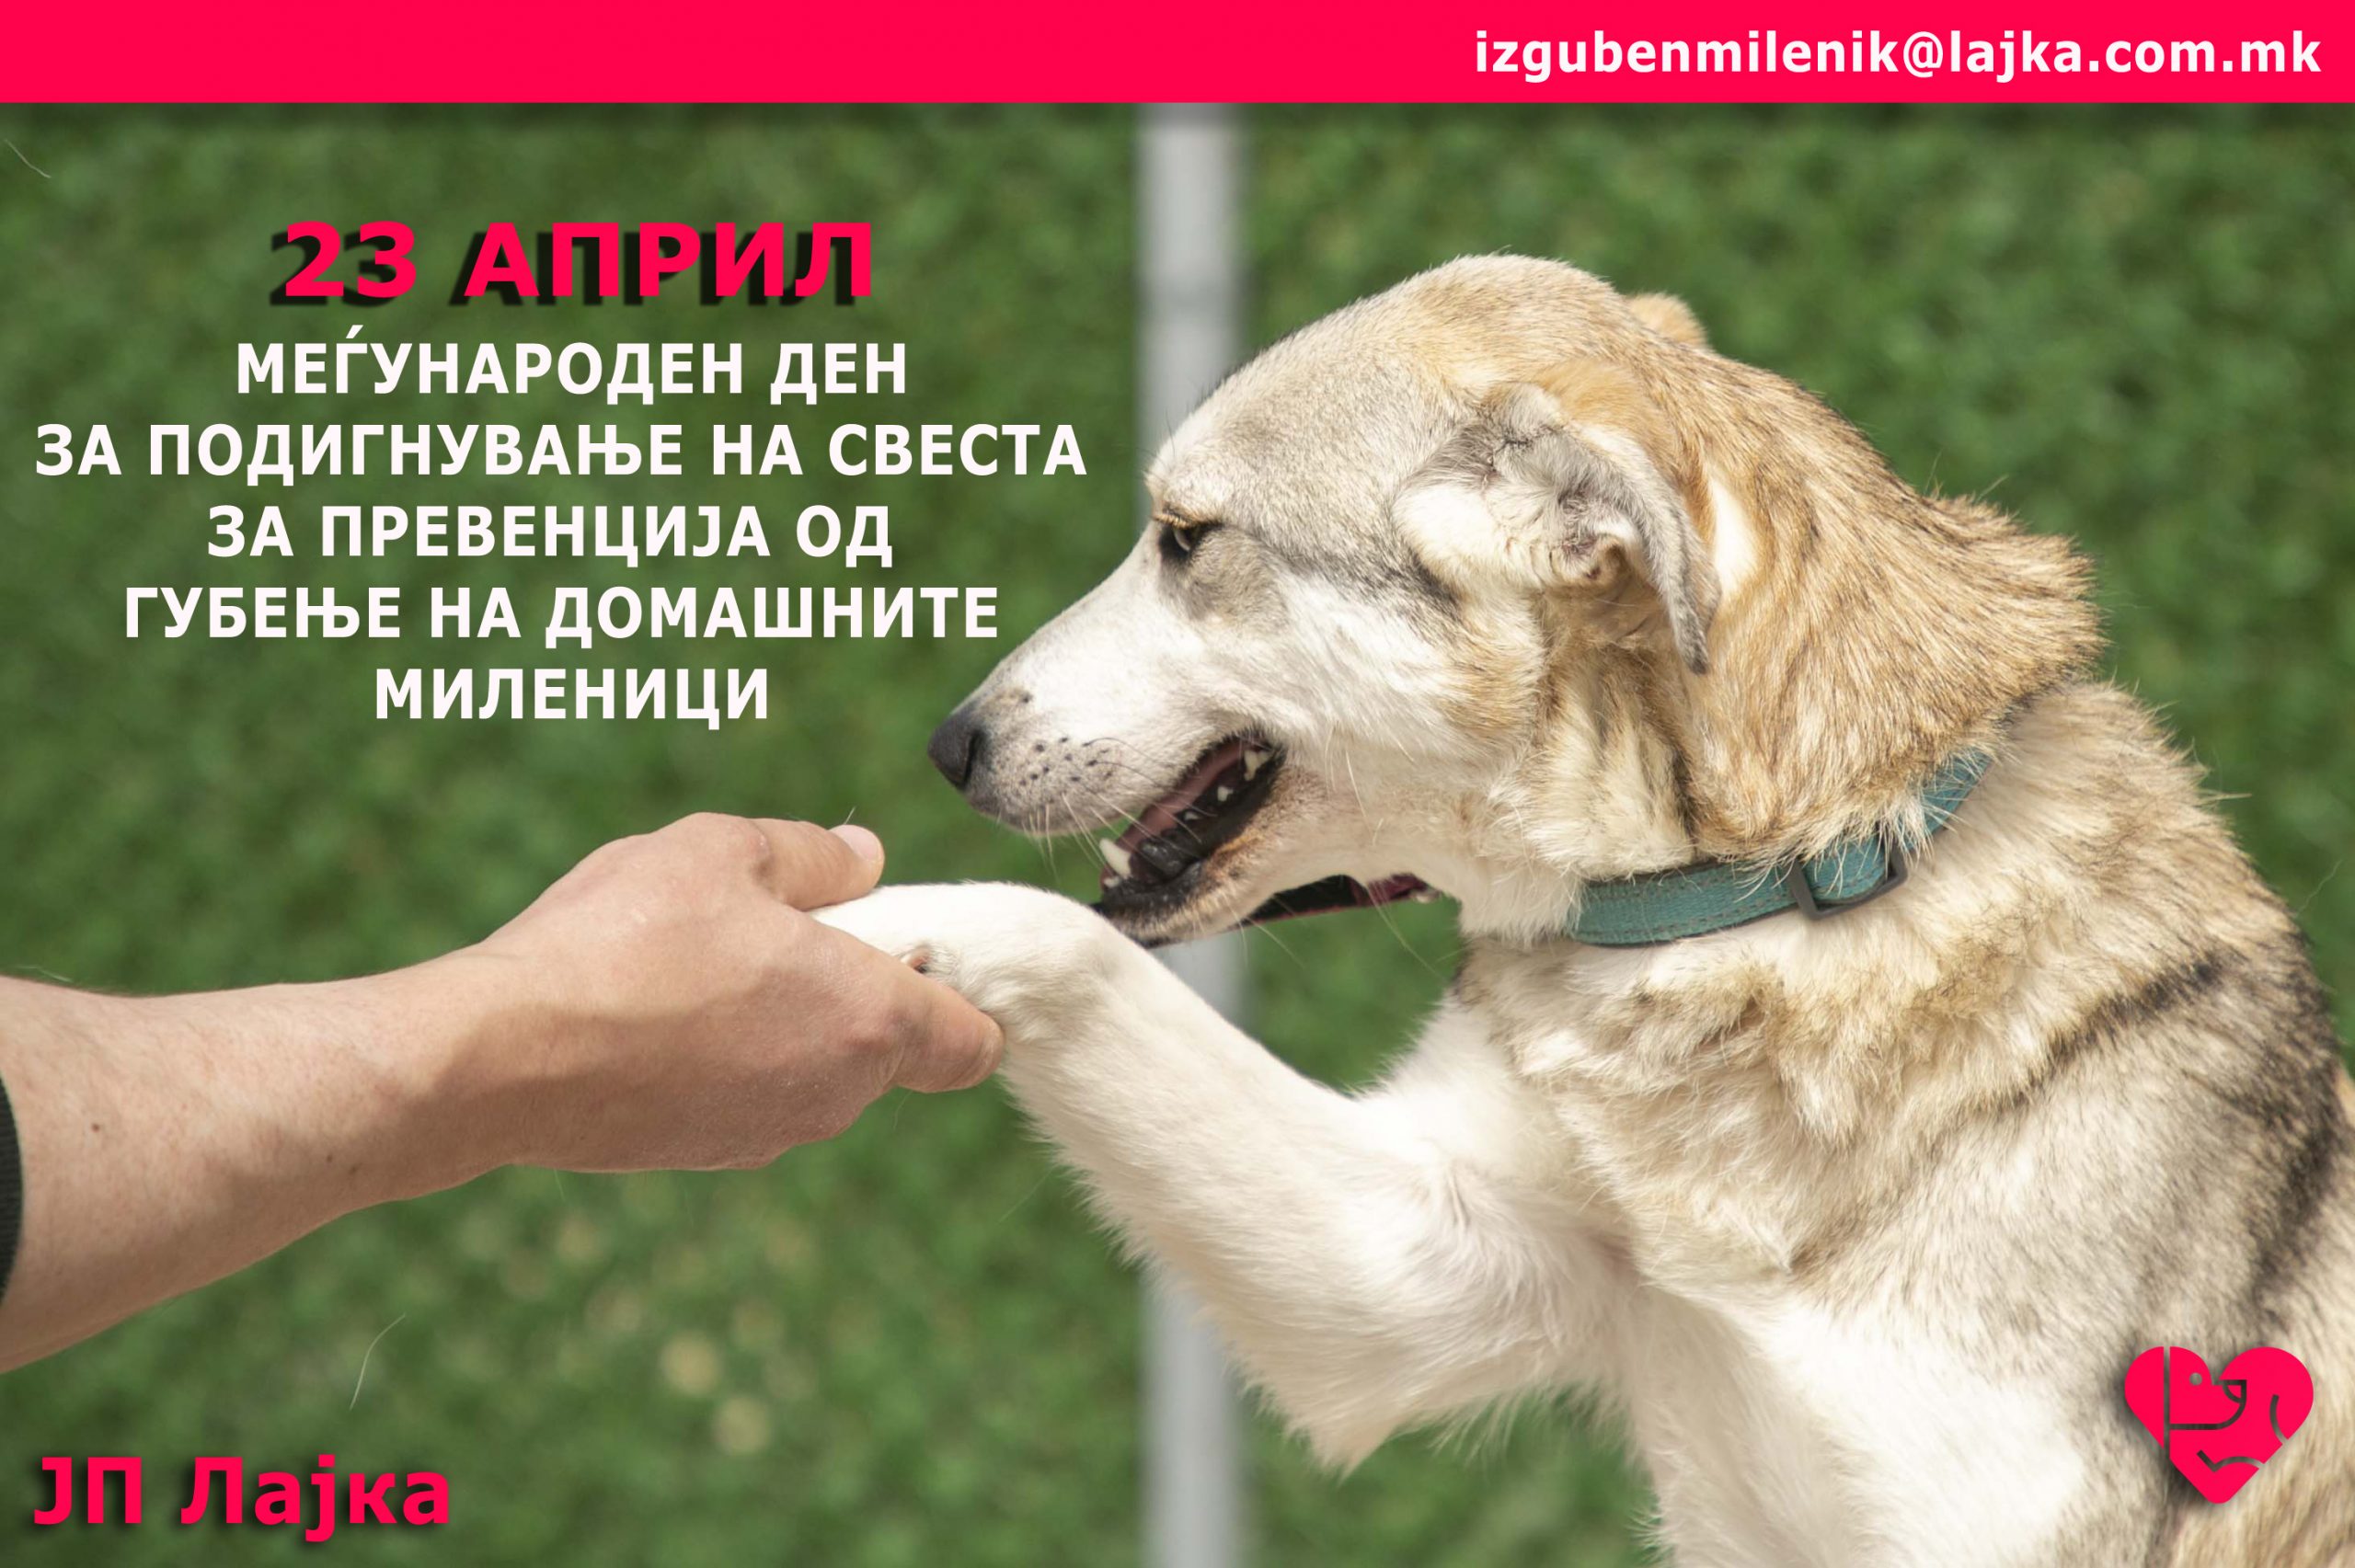 Меѓународен ден за подигнување на свеста за превенција од губење на домашни миленици